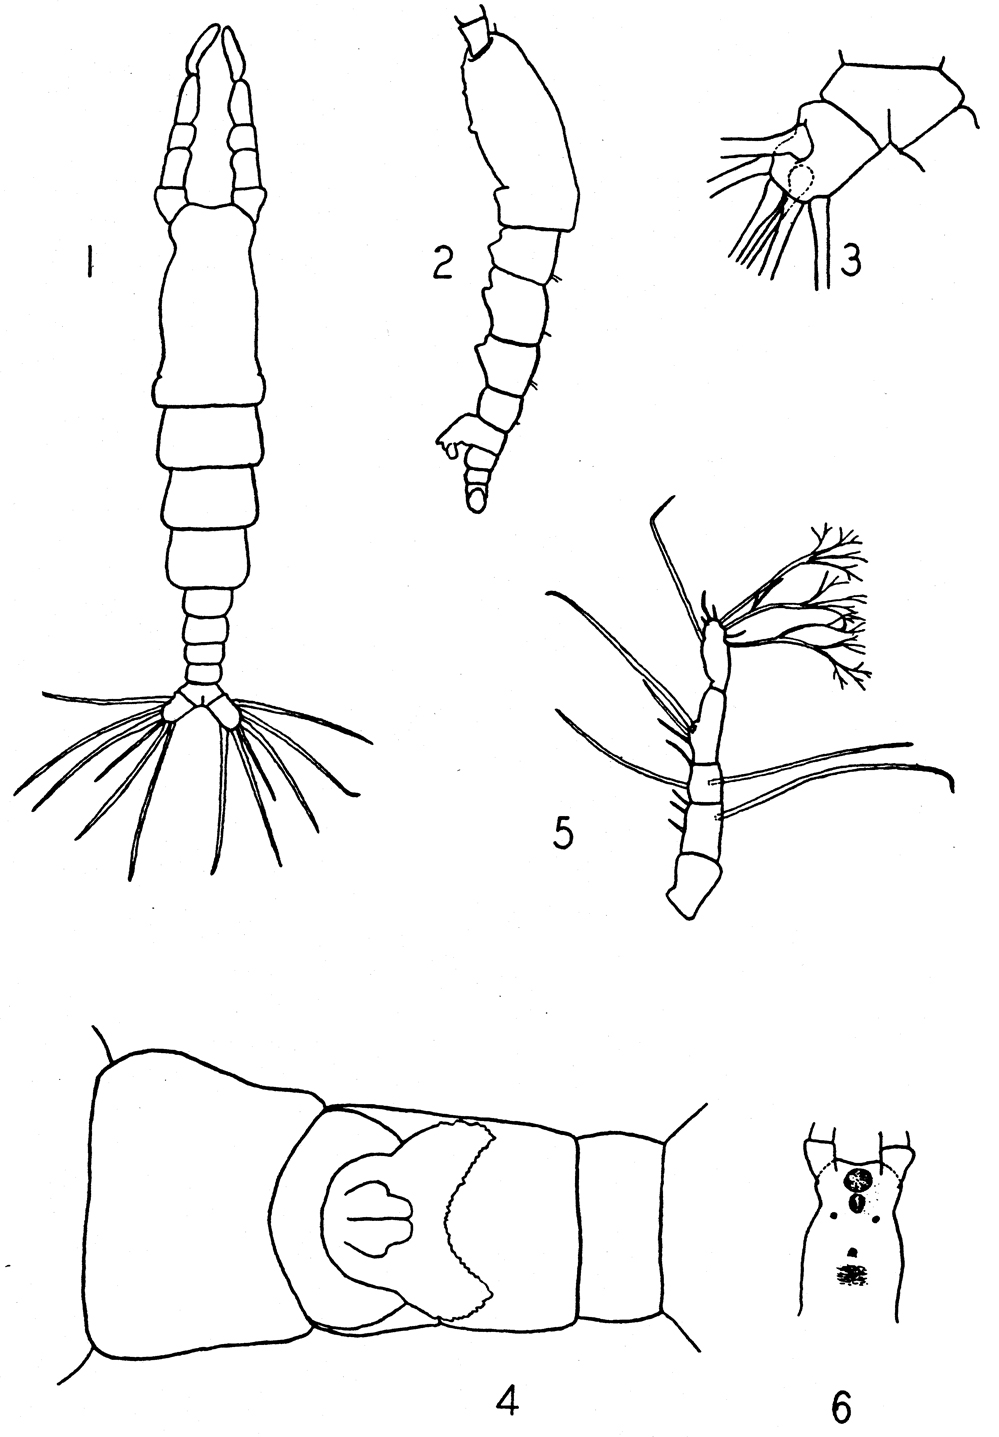 Espce Monstrilla rugosa - Planche 1 de figures morphologiques